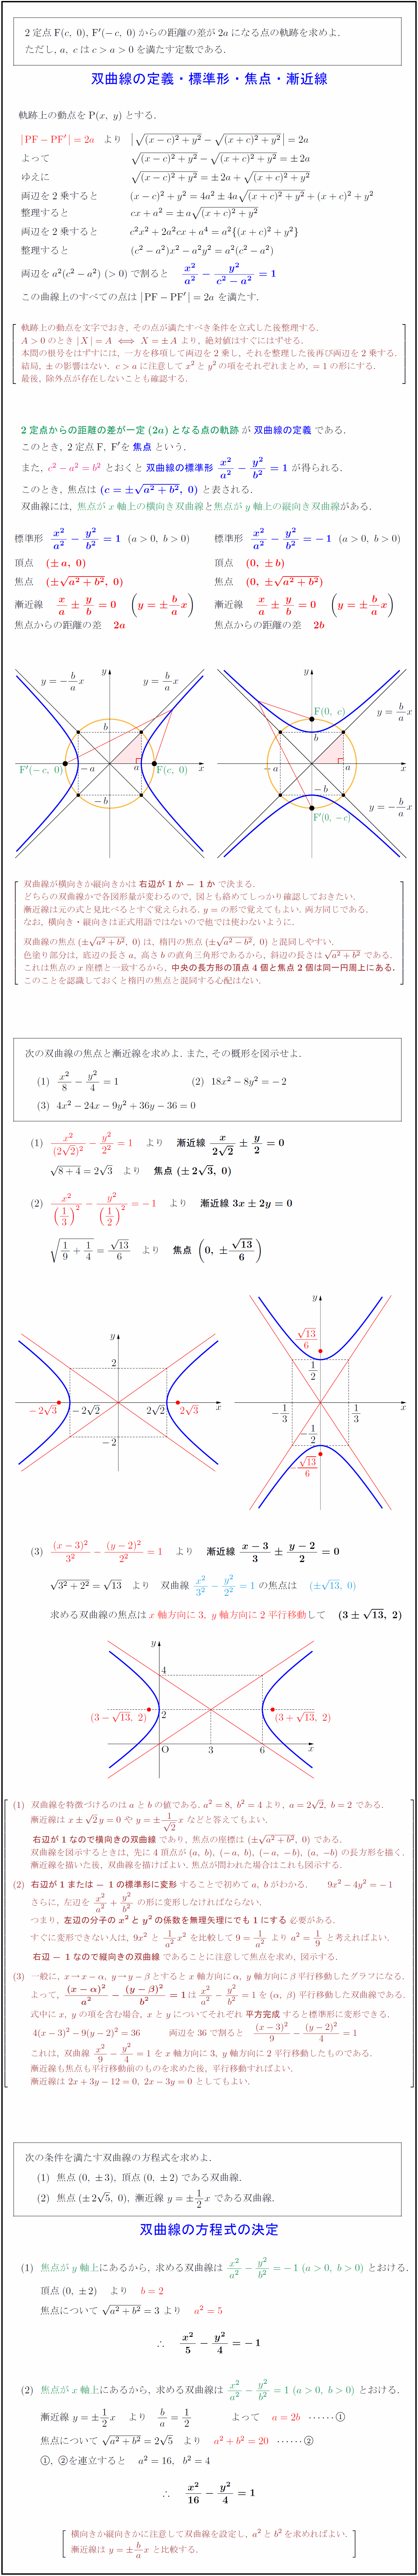 高校数学 双曲線の定義 標準形 焦点 漸近線 双曲線の方程式の決定 受験の月